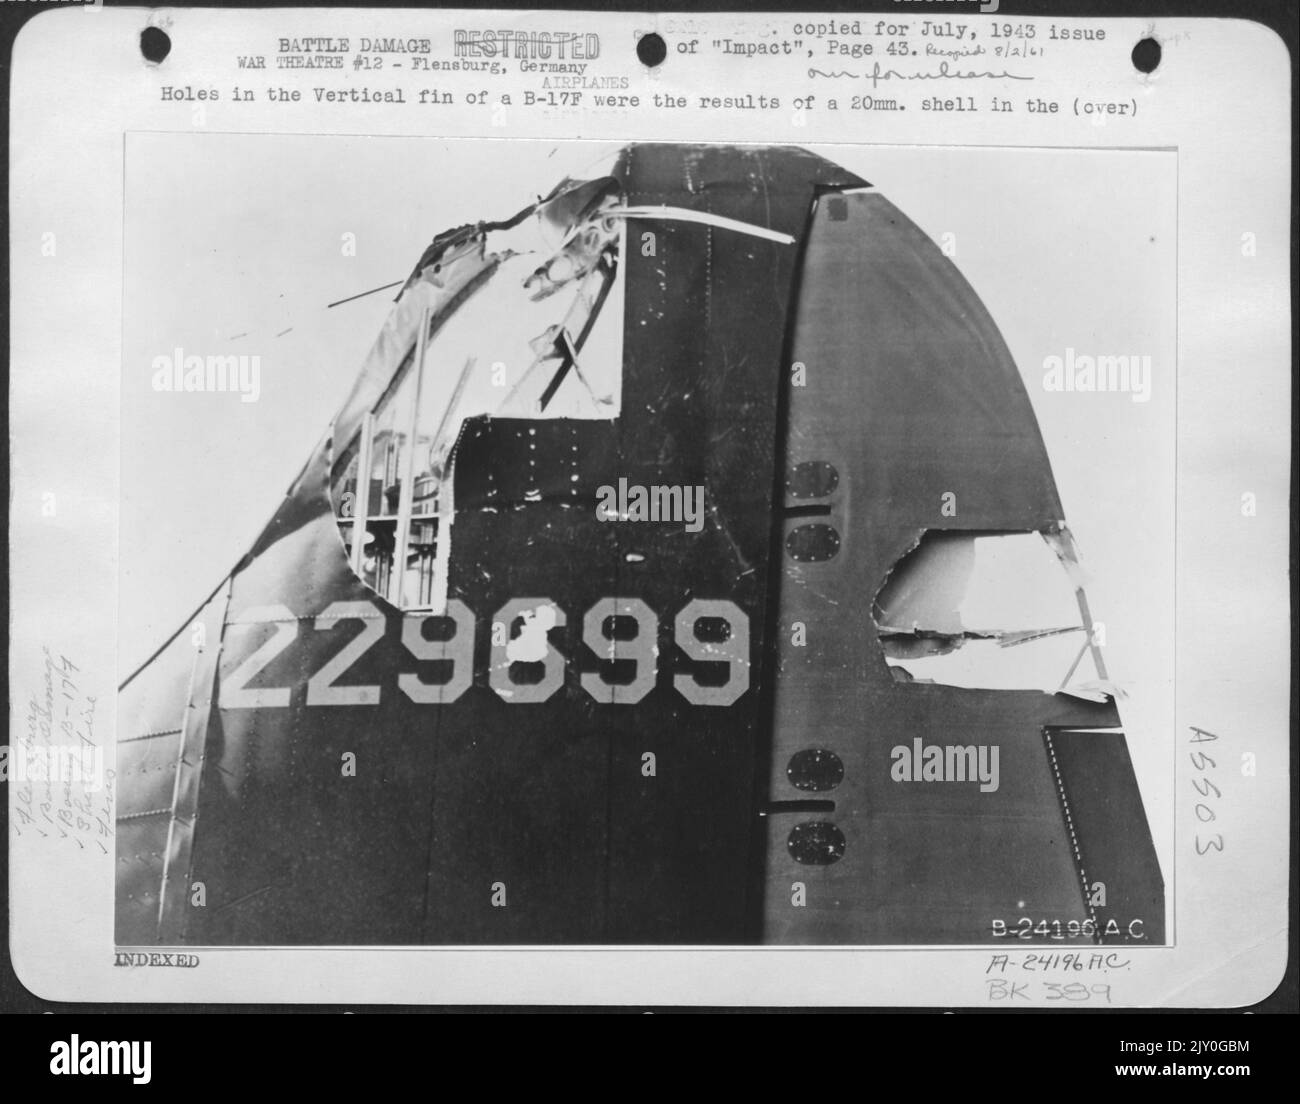 Löcher in der Vertikalen Flosse einer B-17F waren die Ergebnisse einer 20mm. Granatangriff auf die Werft in Flensburg, Mai 19. Stockfoto